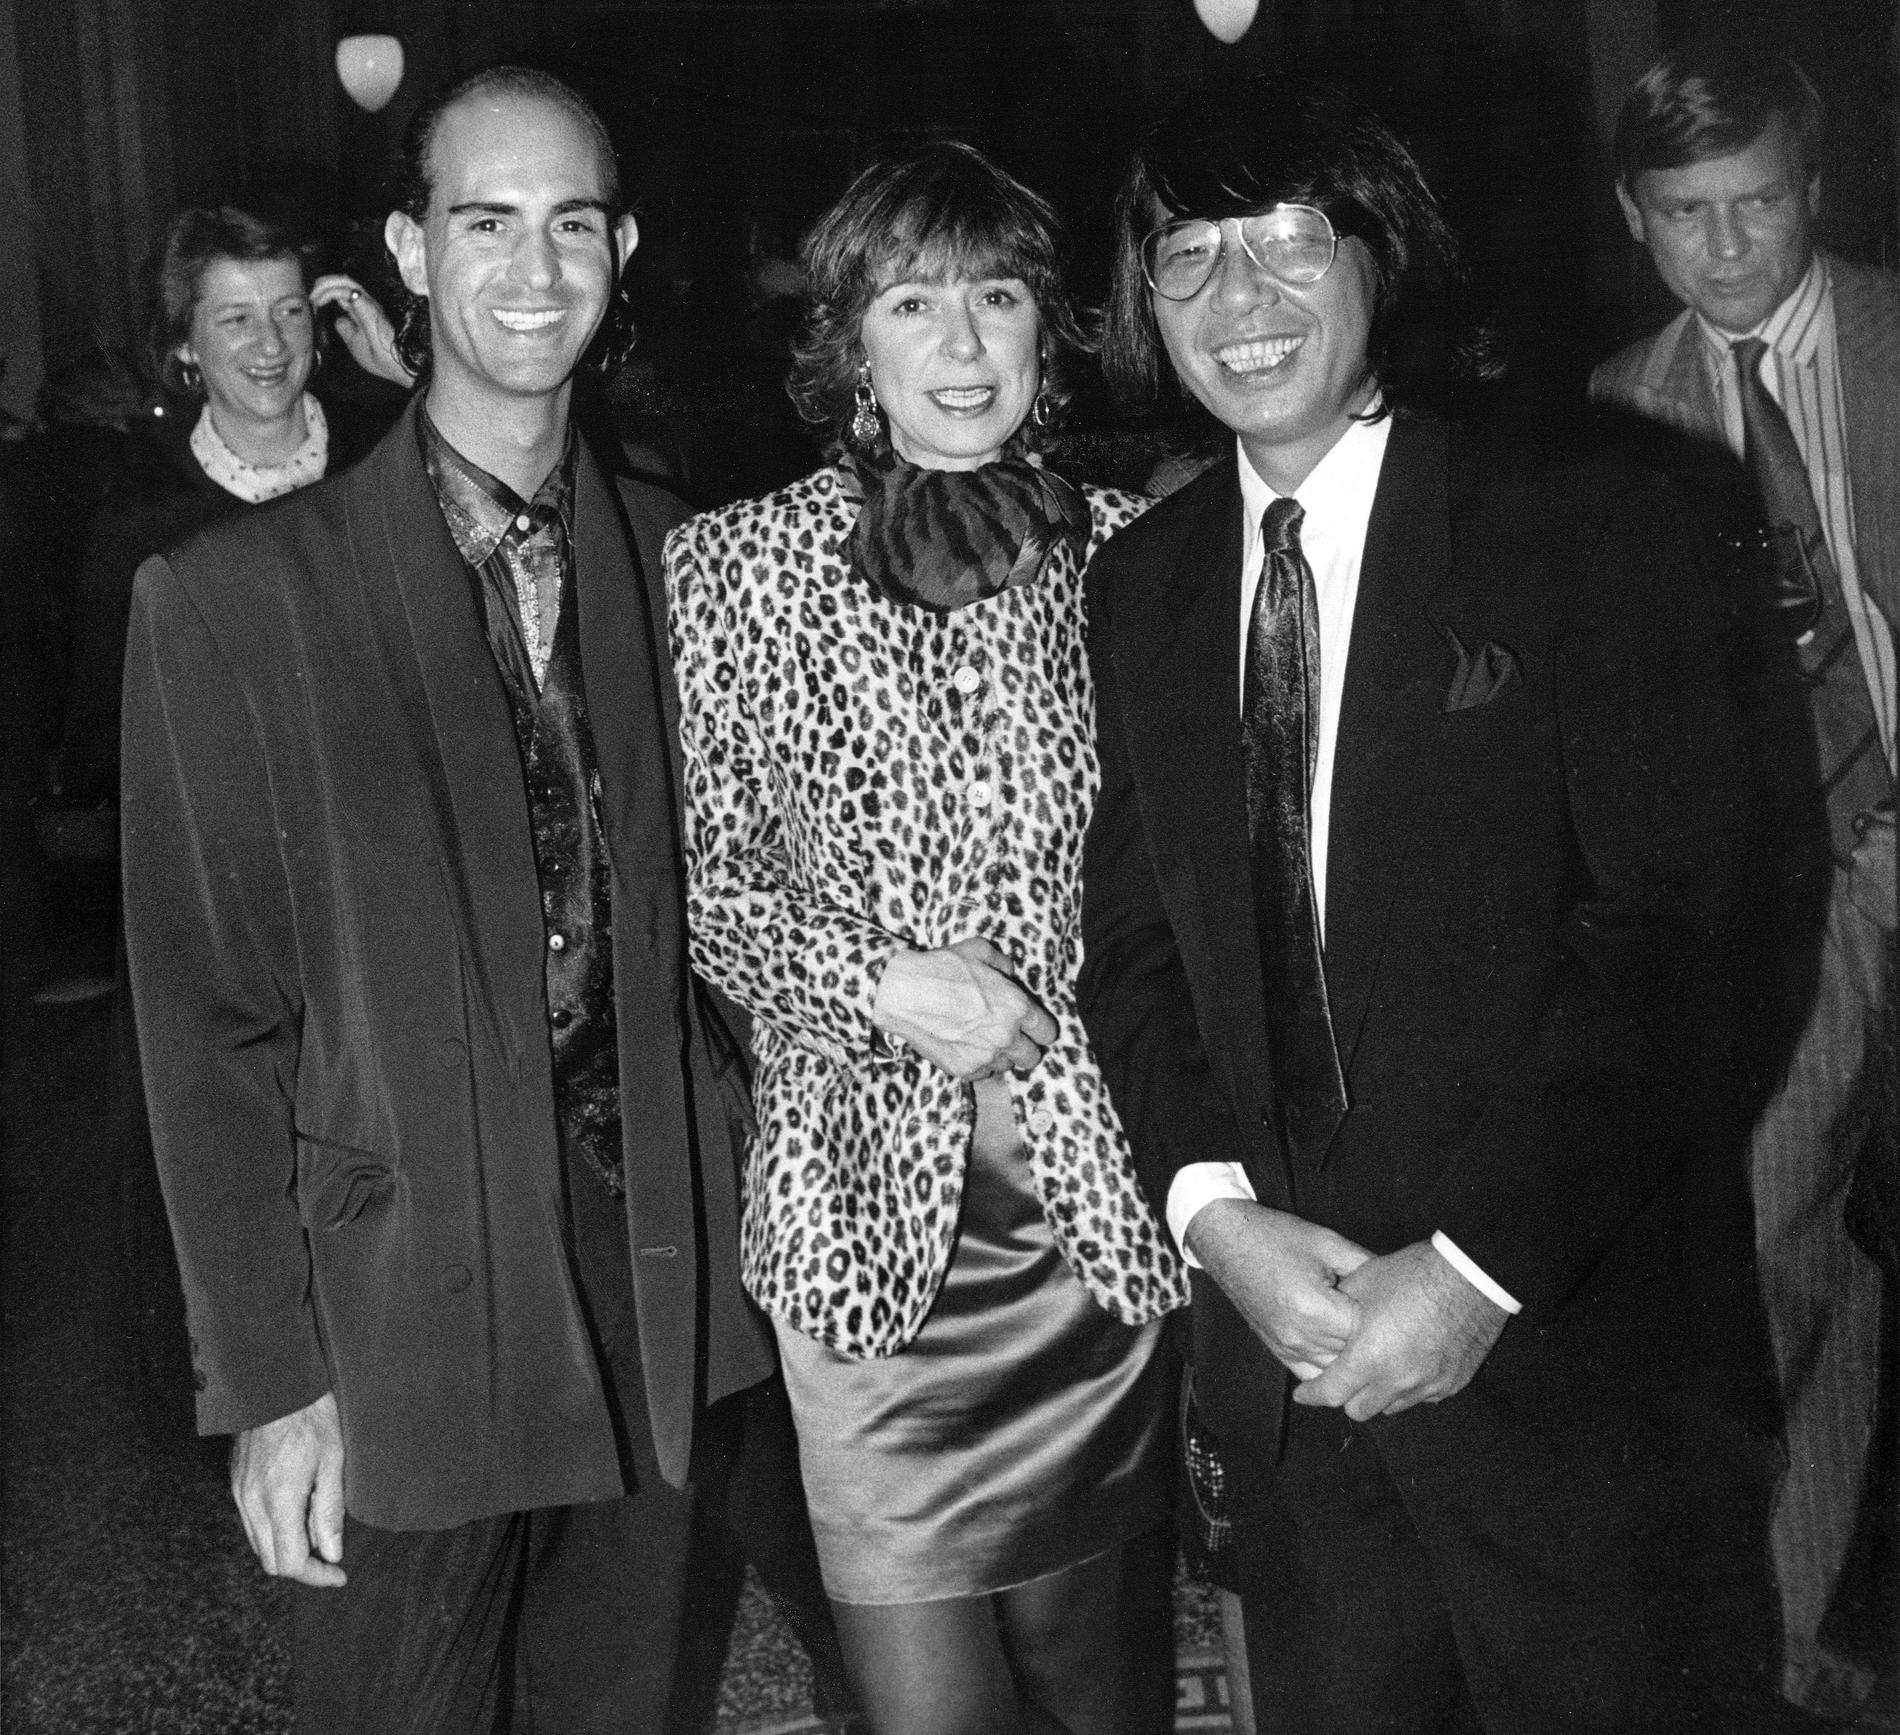  Micael Bindefeld, Ariel de Ravenel och Kenzo Takada 1989.